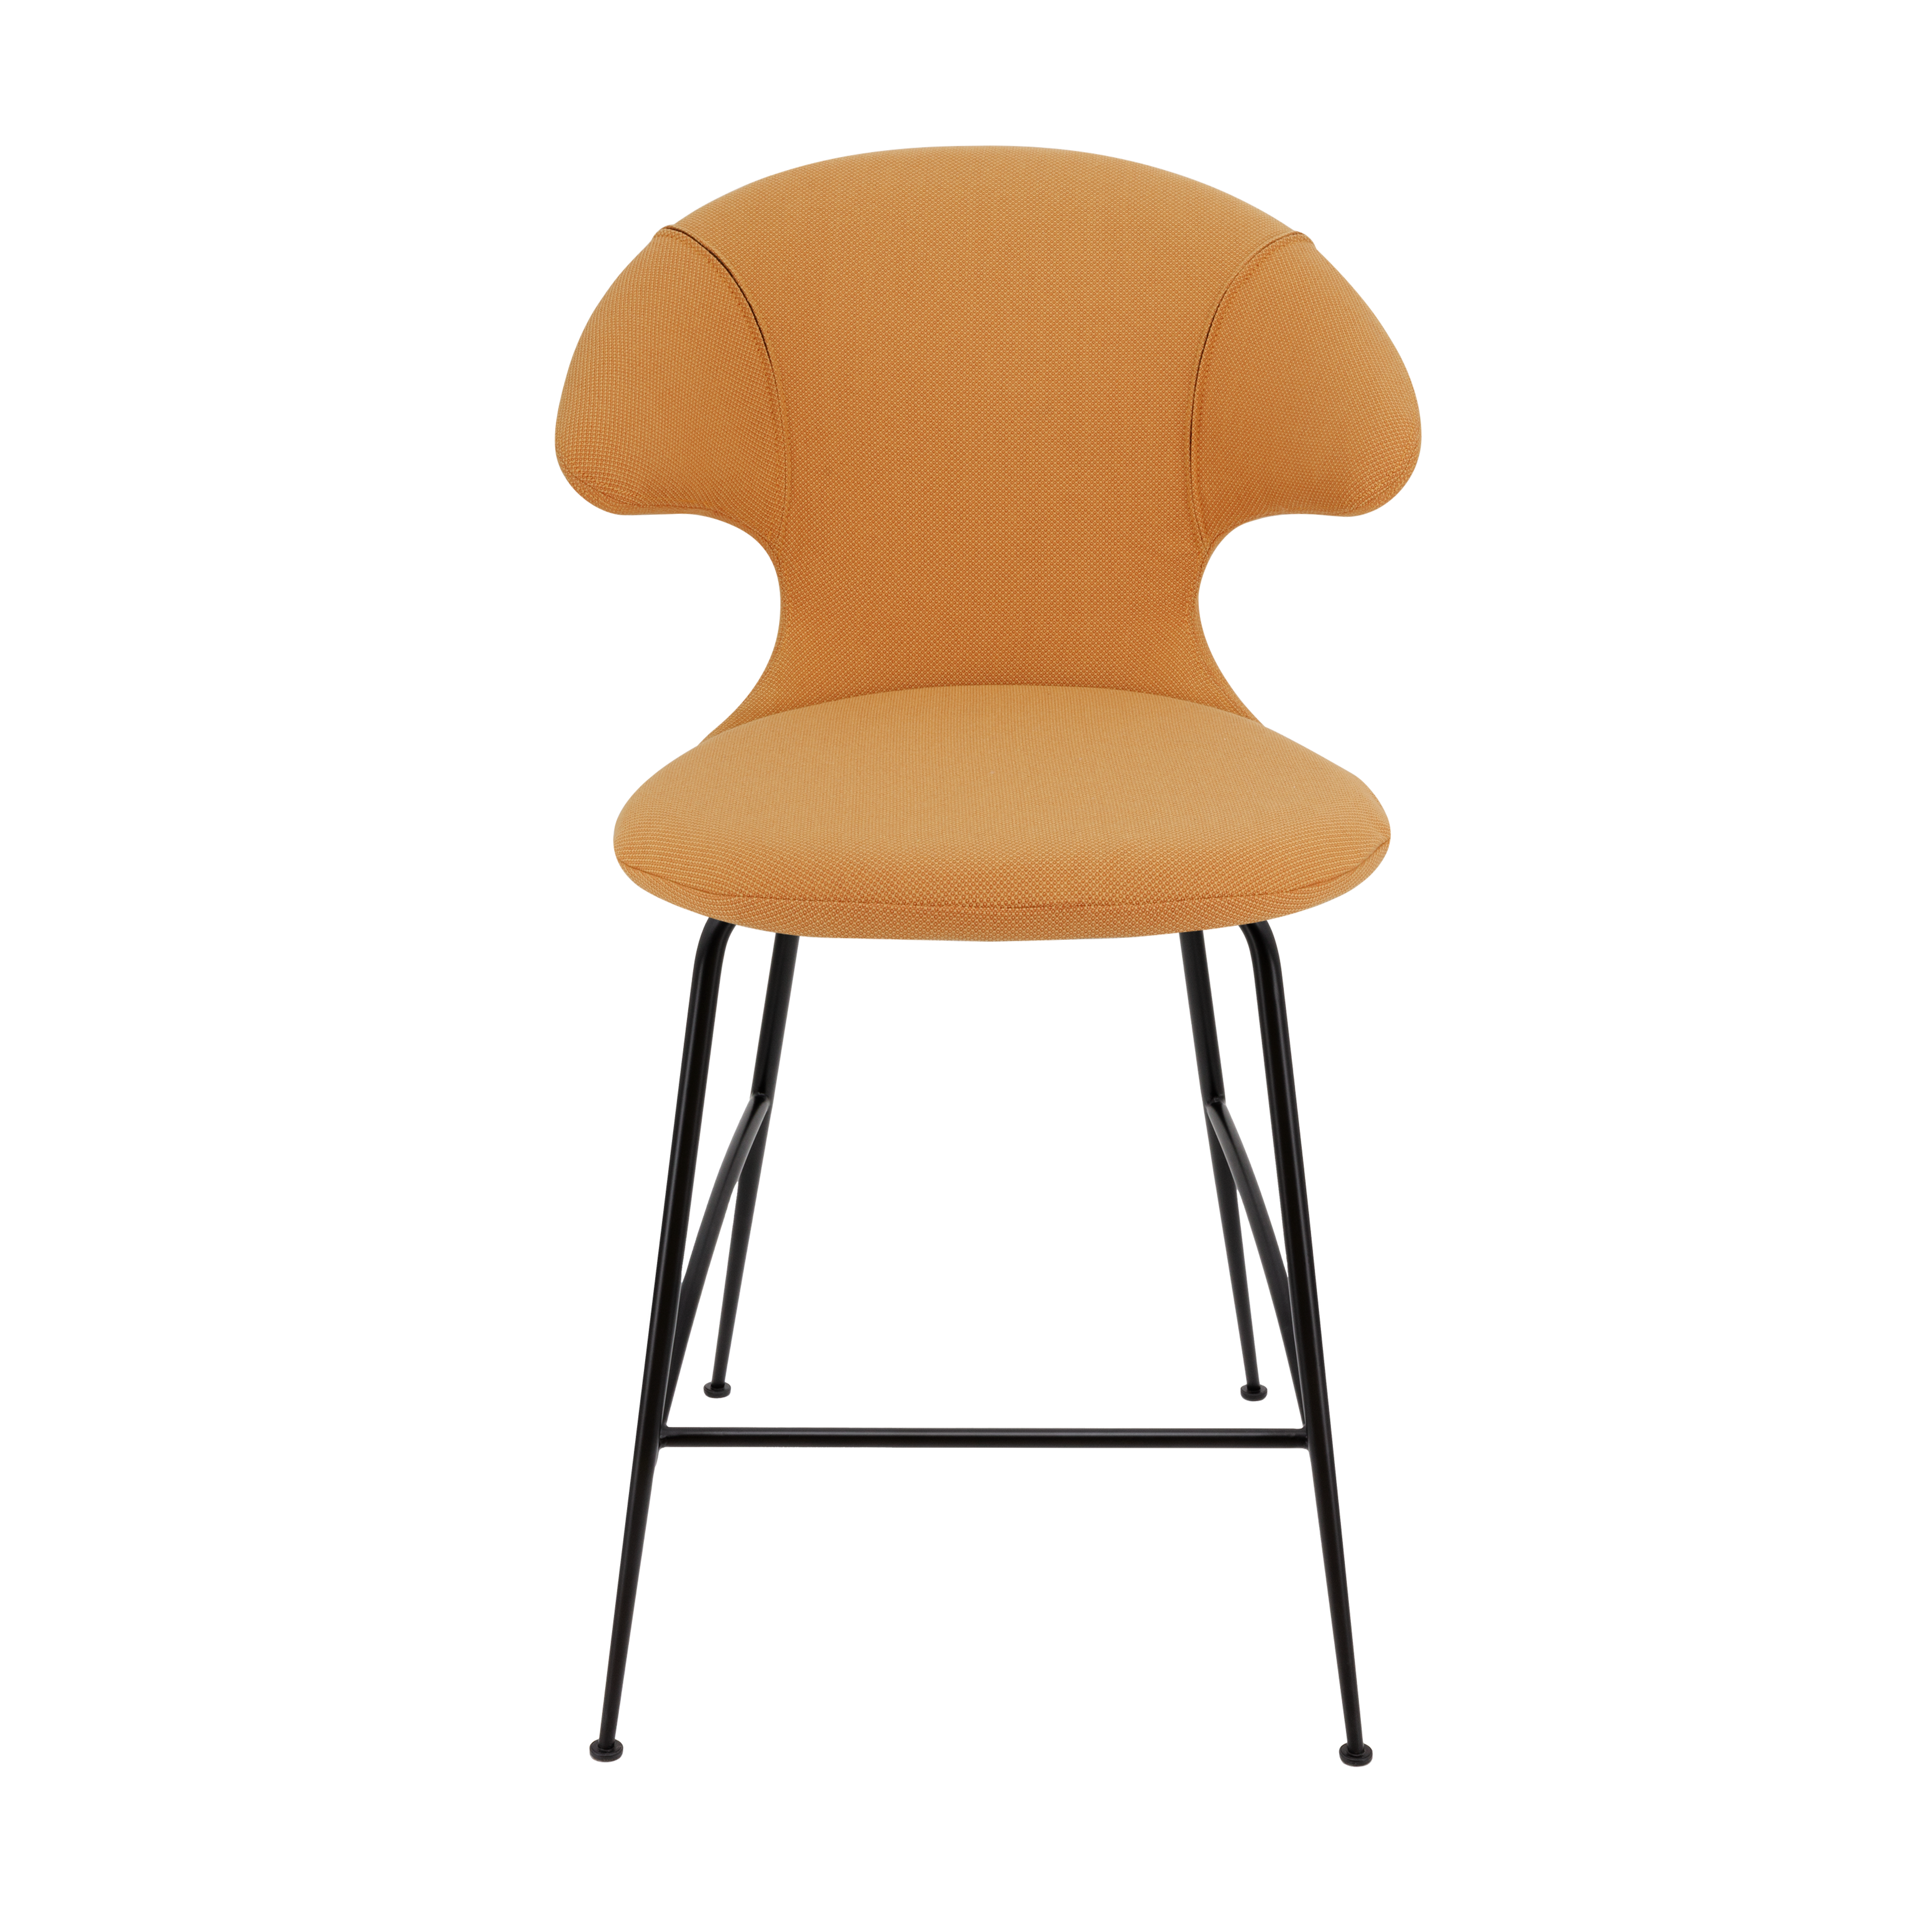 Time Flies Counter Stuhl in Tangerine präsentiert im Onlineshop von KAQTU Design AG. Barstuhl mit Armlehne ist von Umage